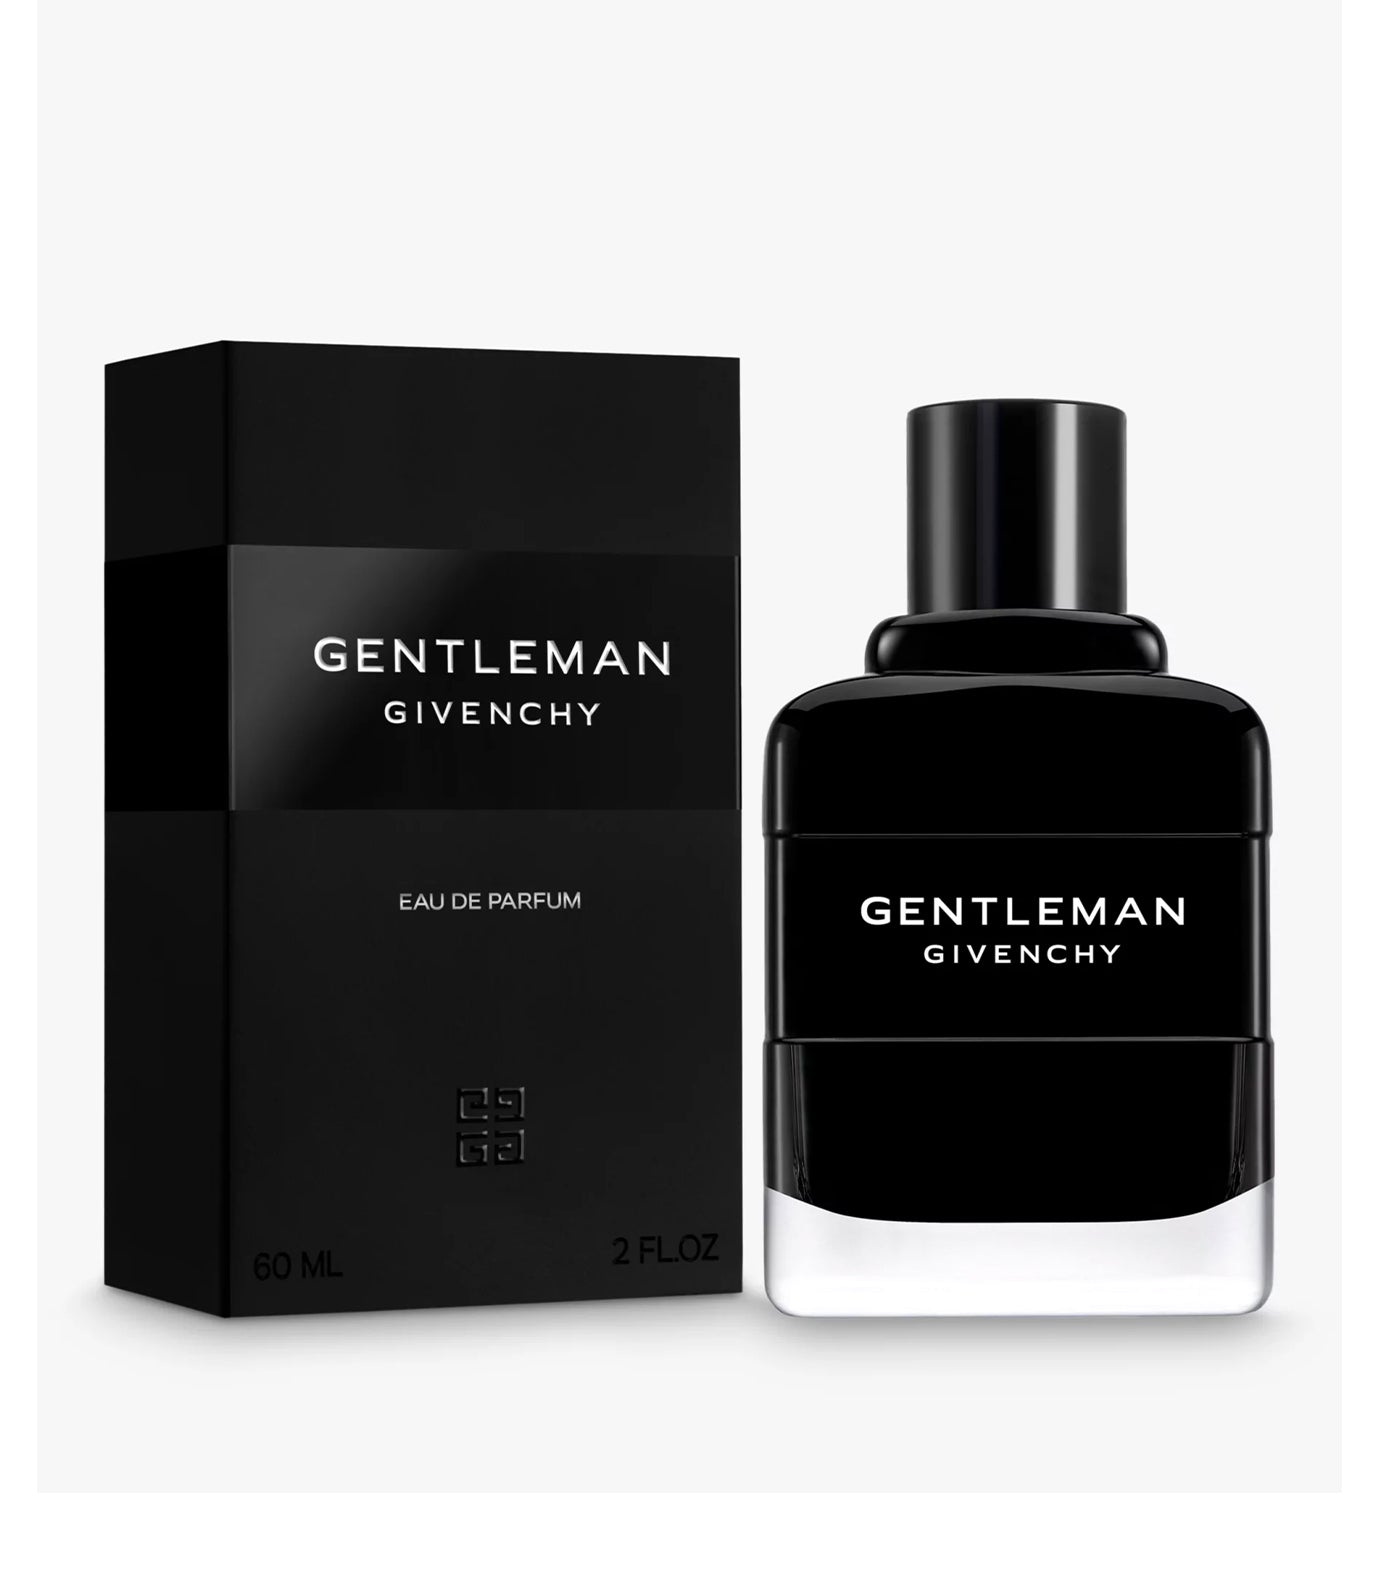 GENTLEMAN GIVENCHY Eau de Parfum